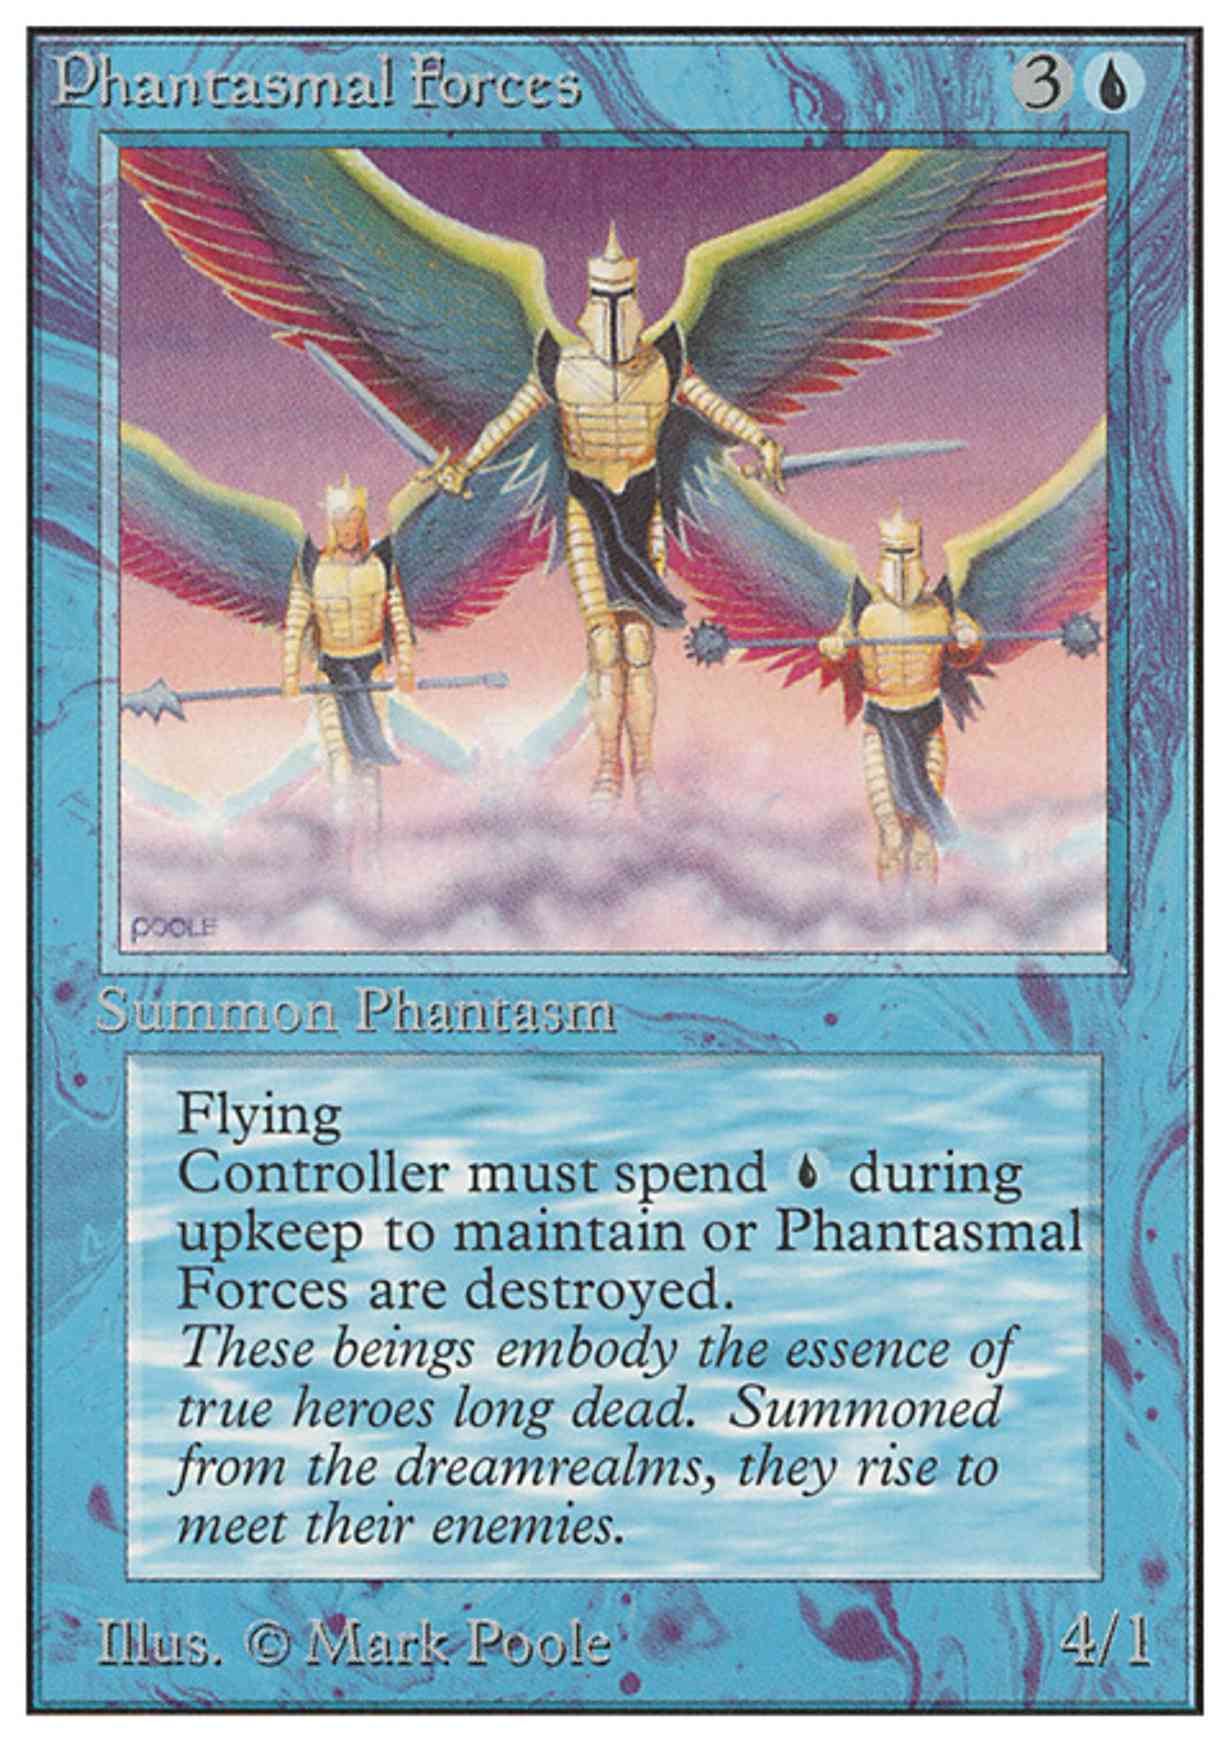 Phantasmal Forces magic card front